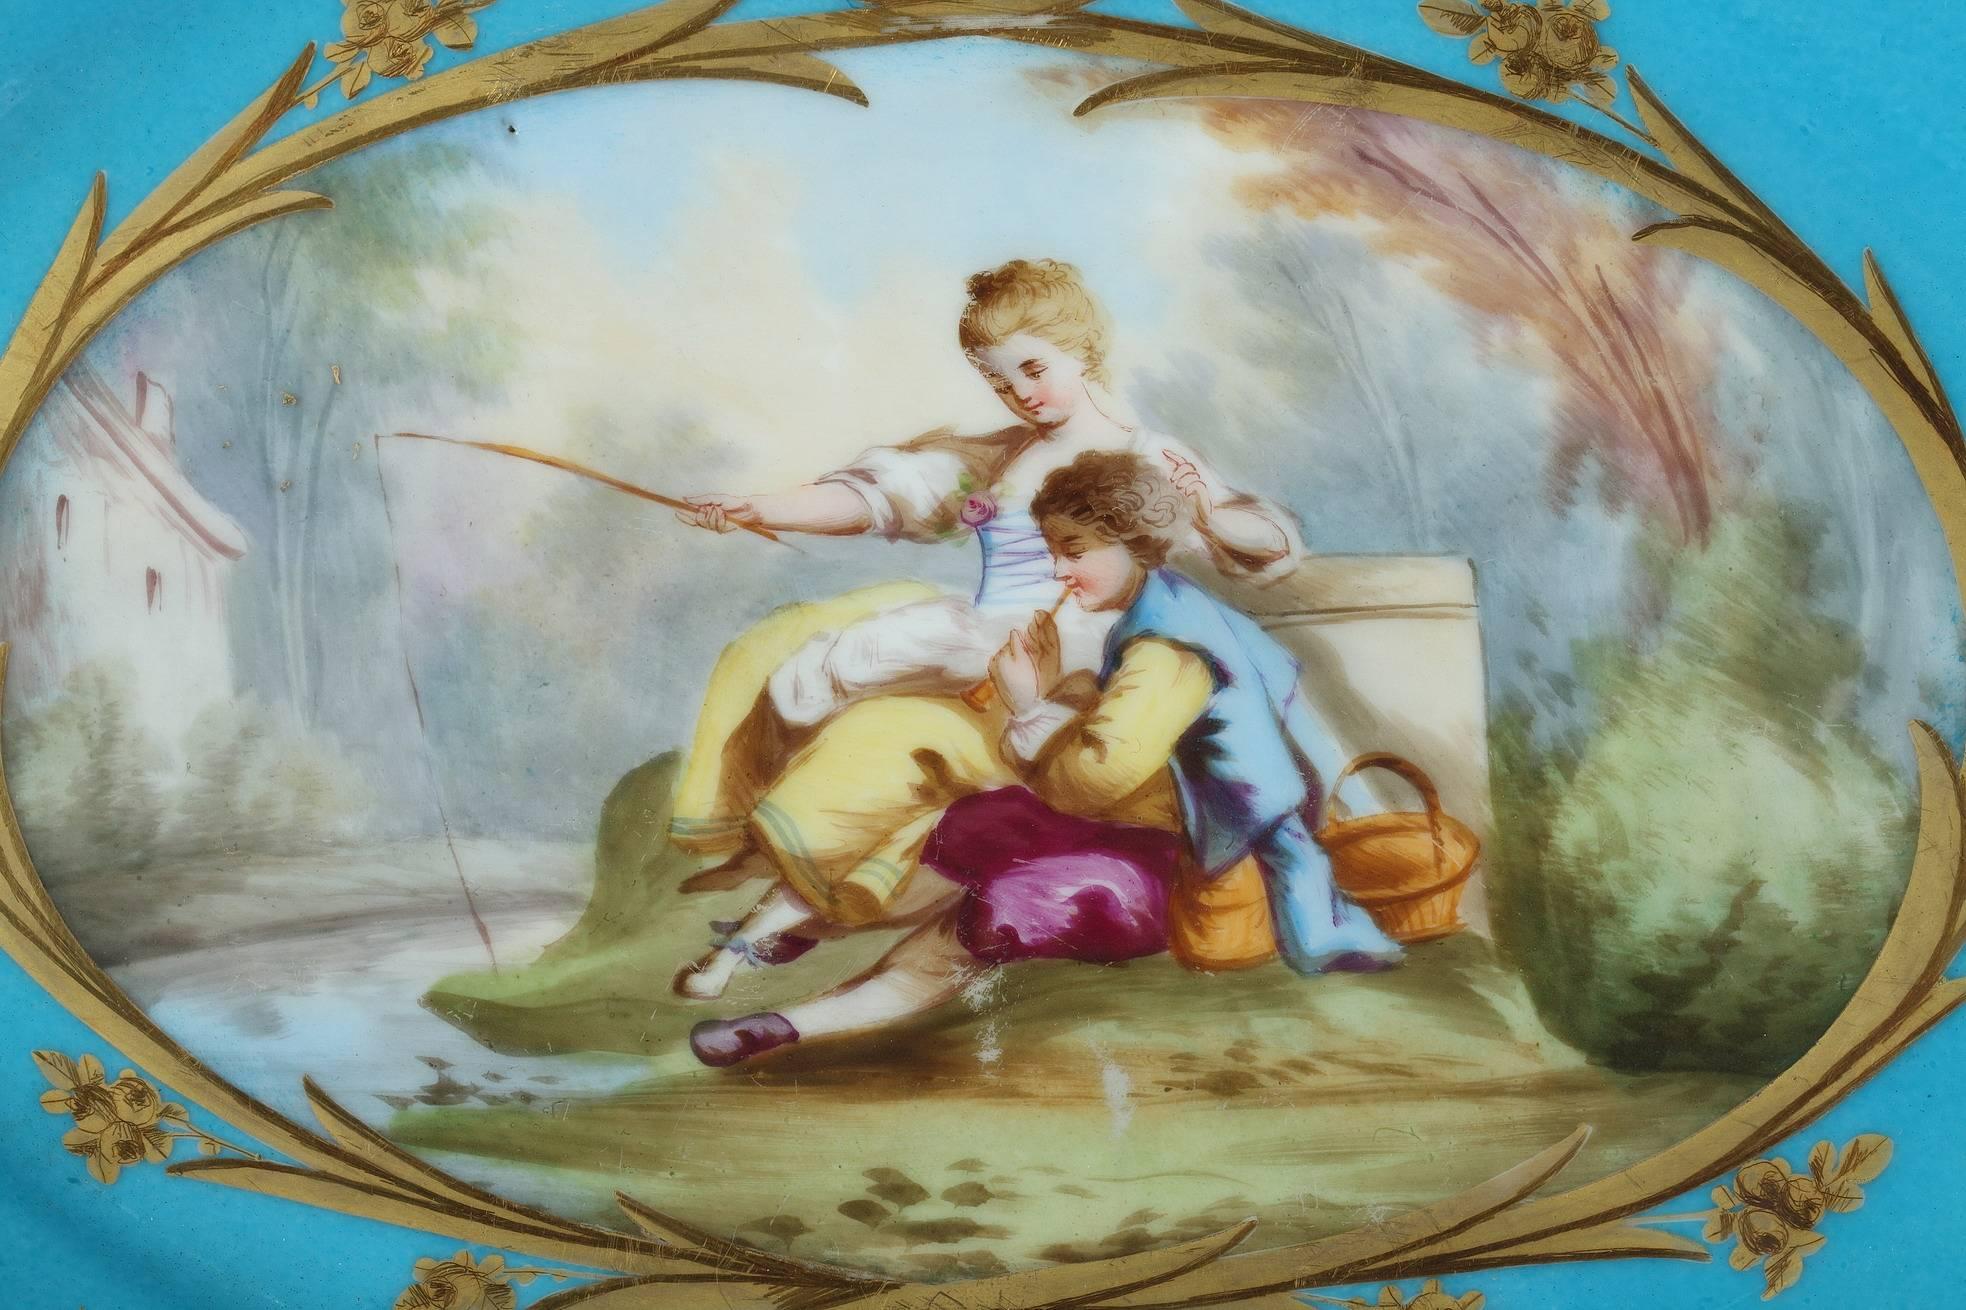 Ovale Tasse aus blauem Porzellan mit polychromem Dekor, bestehend aus einer großen Kartusche mit vergoldeten Rändern, die einen Mann und eine junge Frau in einer Landschaft zeigt, die im Gras an einem See sitzen. Die Frau geht angeln, während ihr